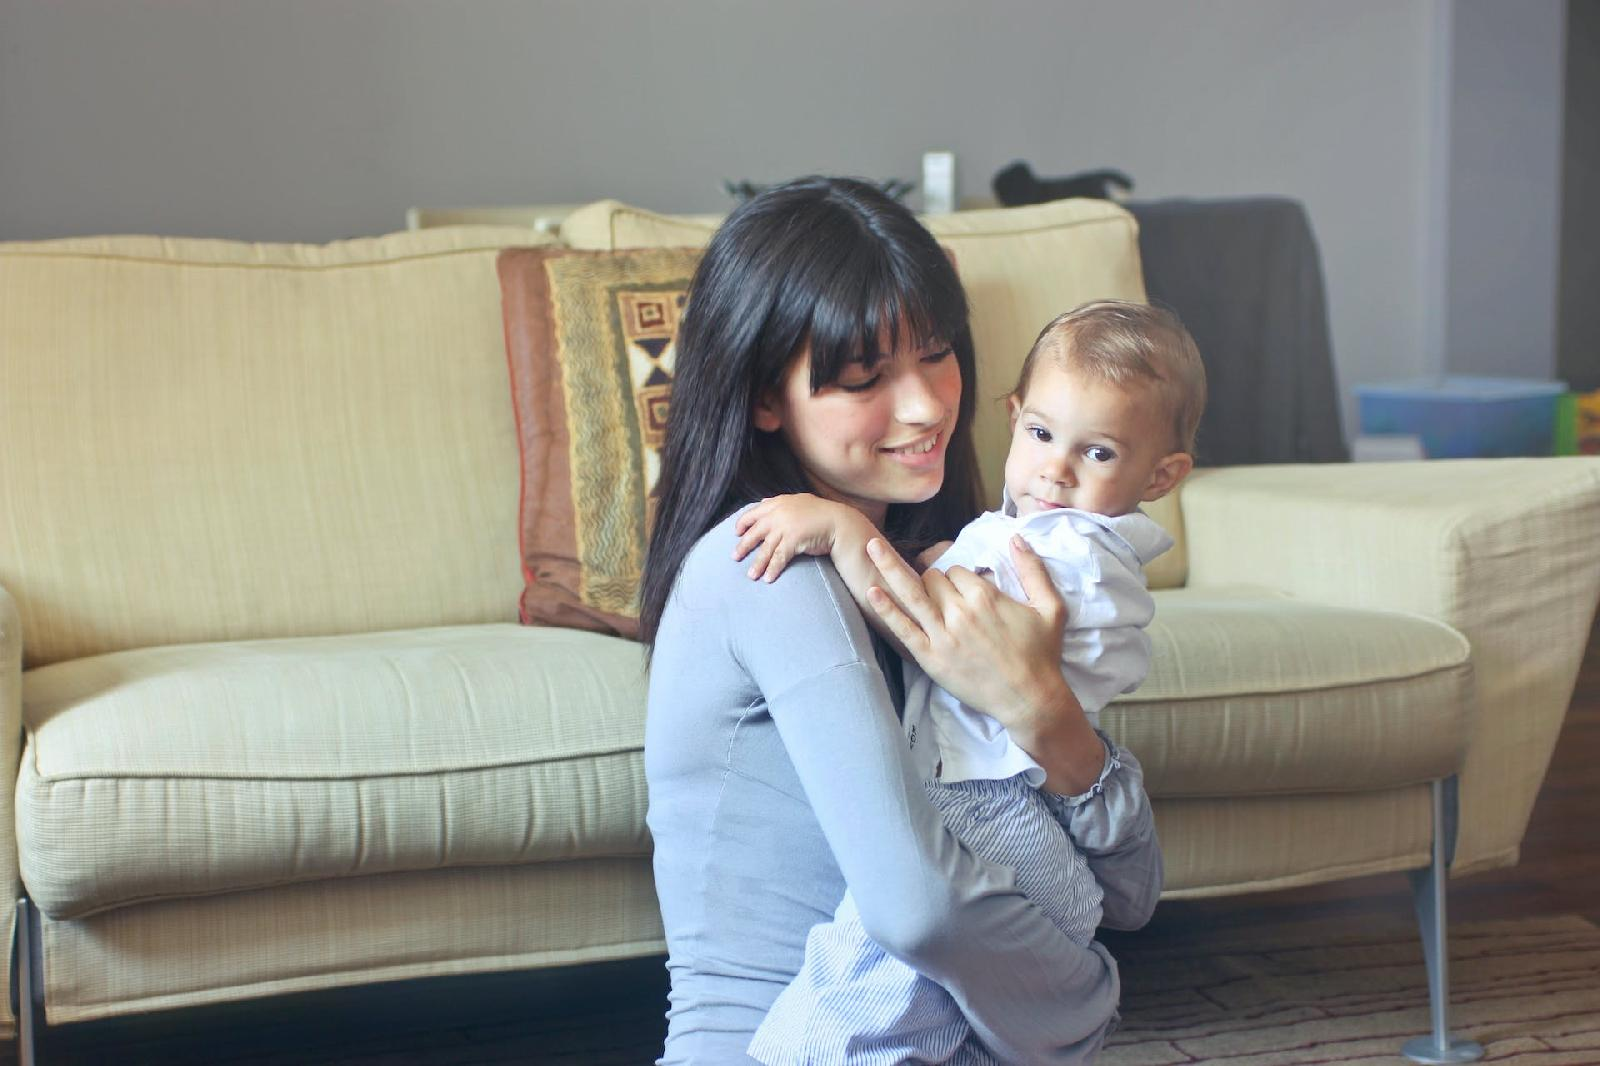 Choisir le bon professionnel du baby-sitting : les conseils a suivre